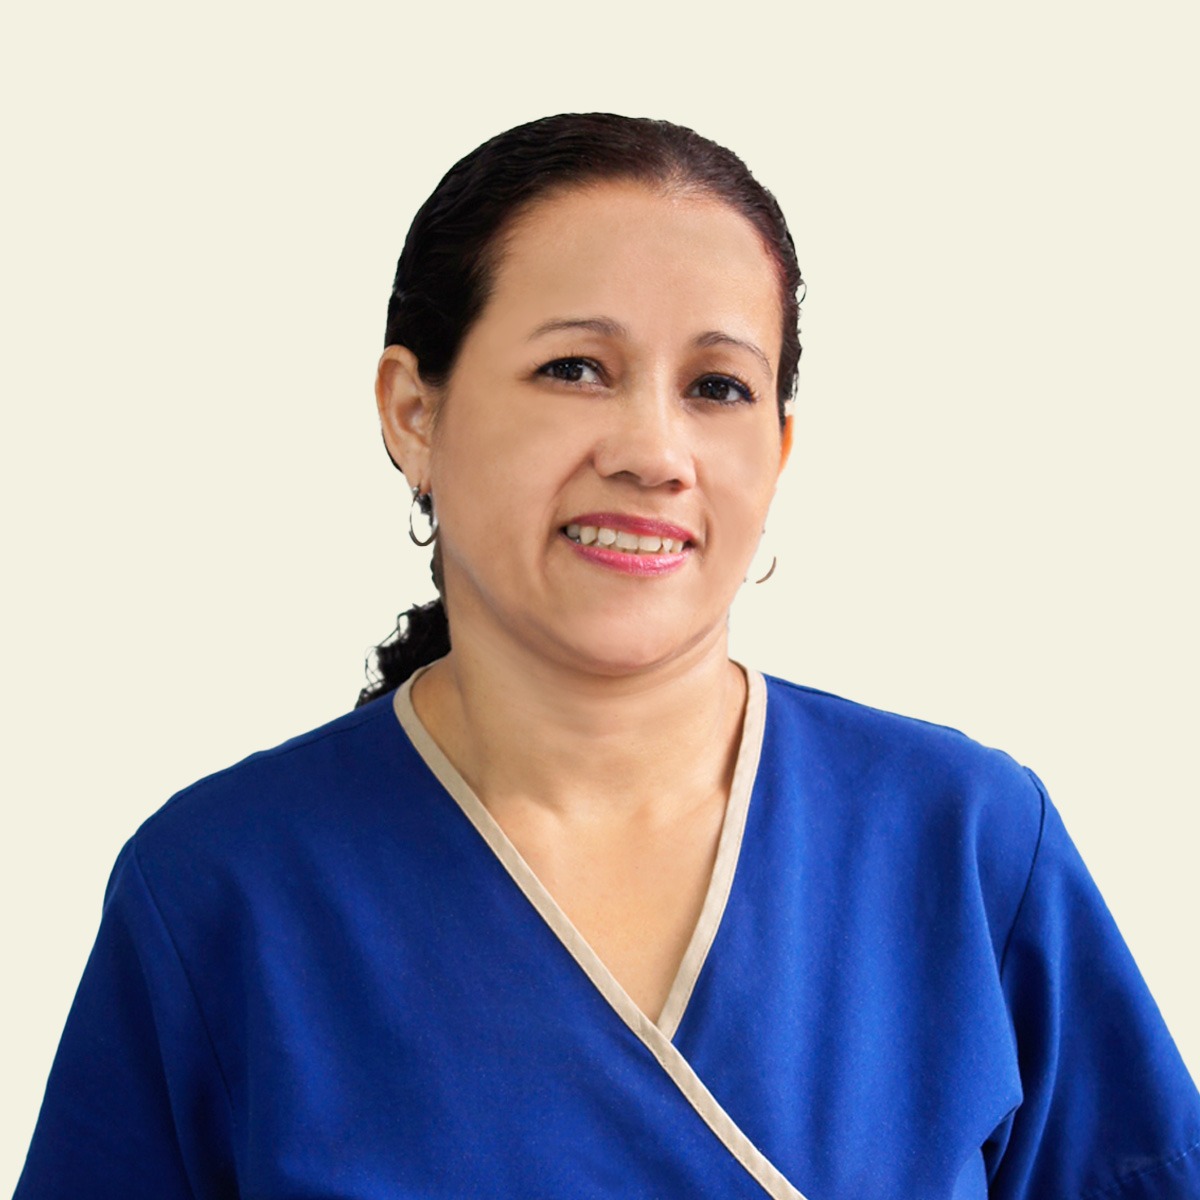 Arlene Murillo